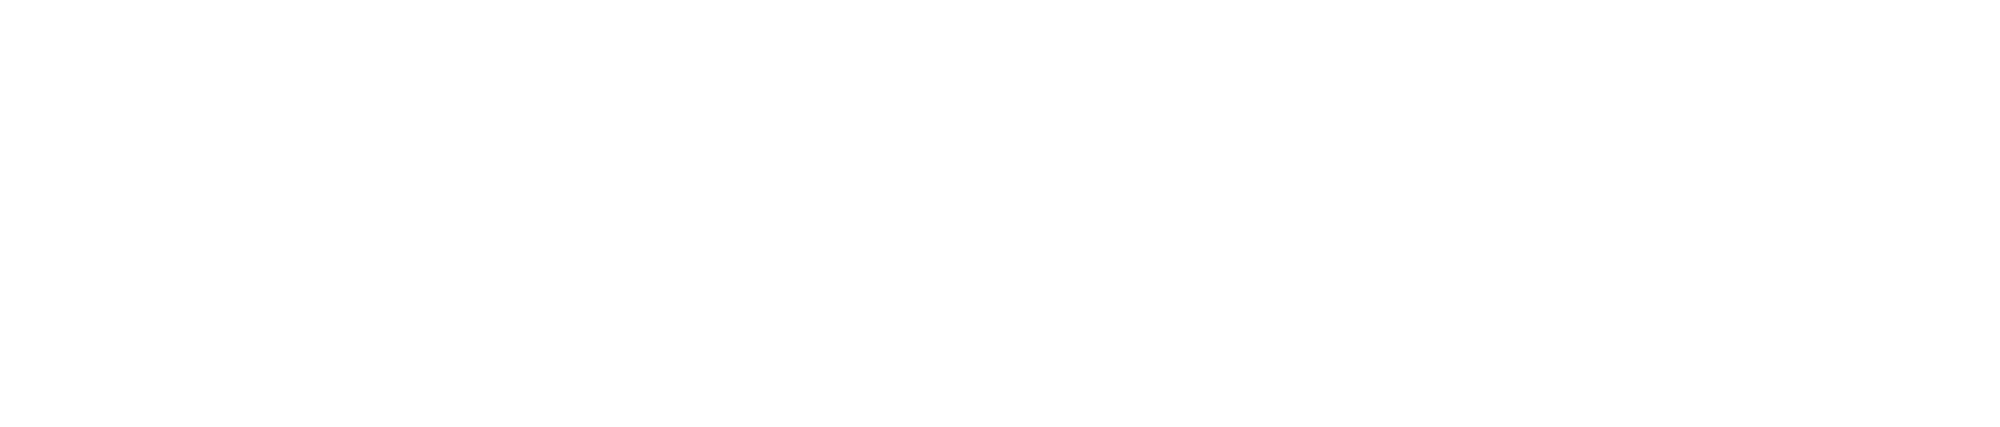 microsoft logo white png